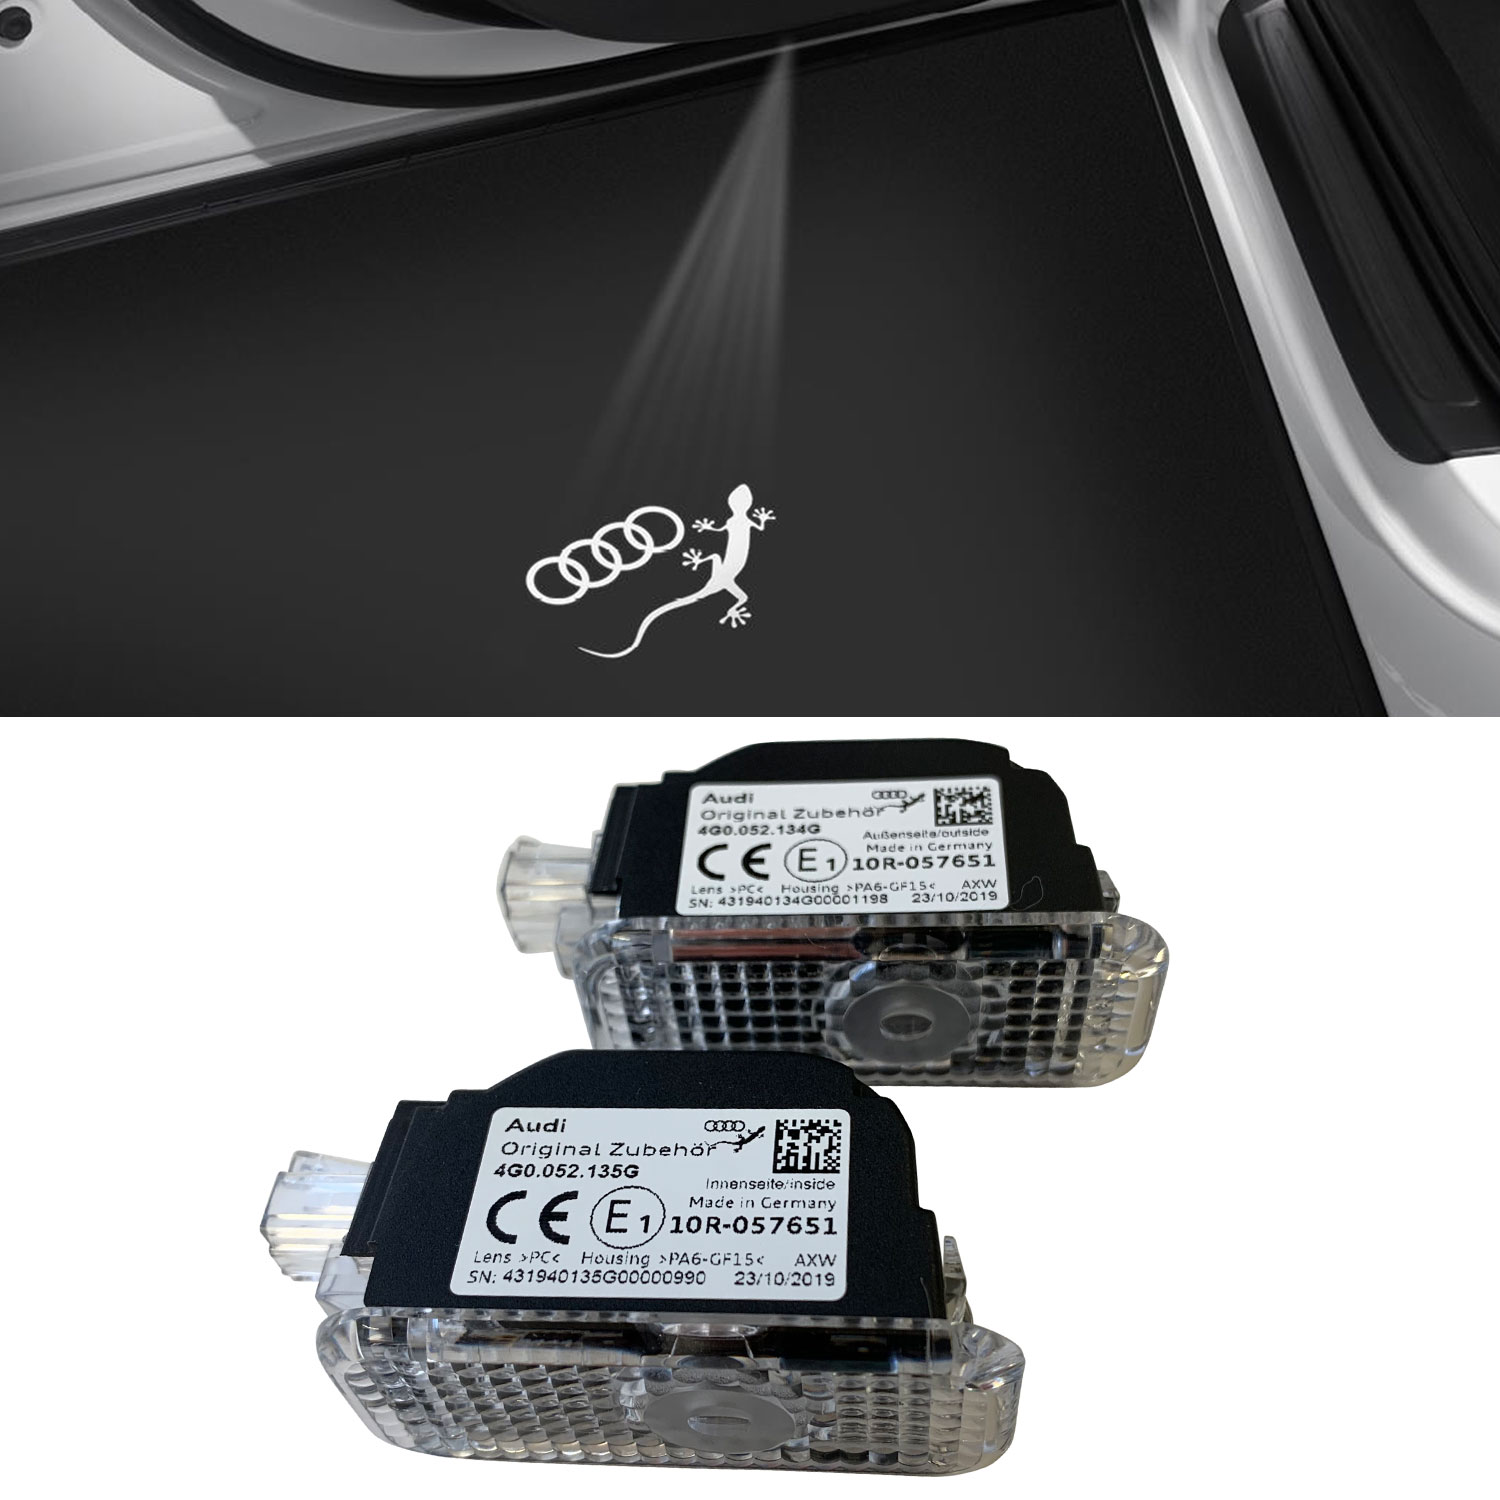 Original Audi Einstiegs-LED Audi Ringe für A3 A4 A6 Q3 Q5